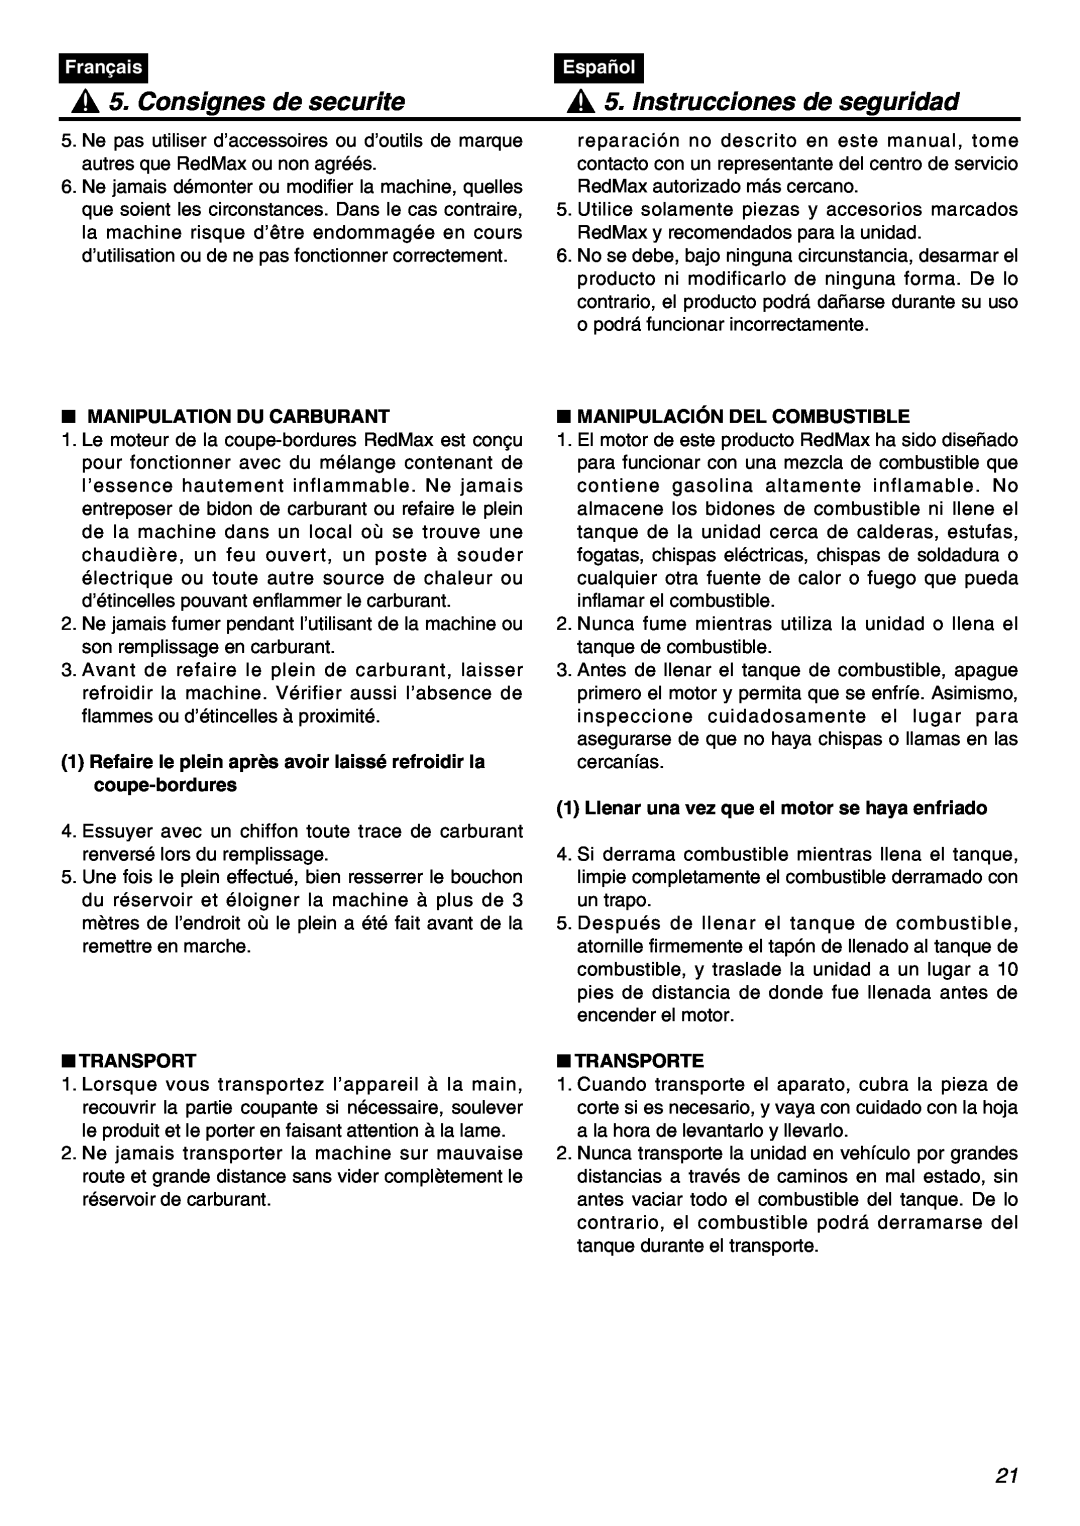 RedMax HEZ3001S Consignes de securite, Instrucciones de seguridad, Français, Español, Manipulation Du Carburant, Transport 